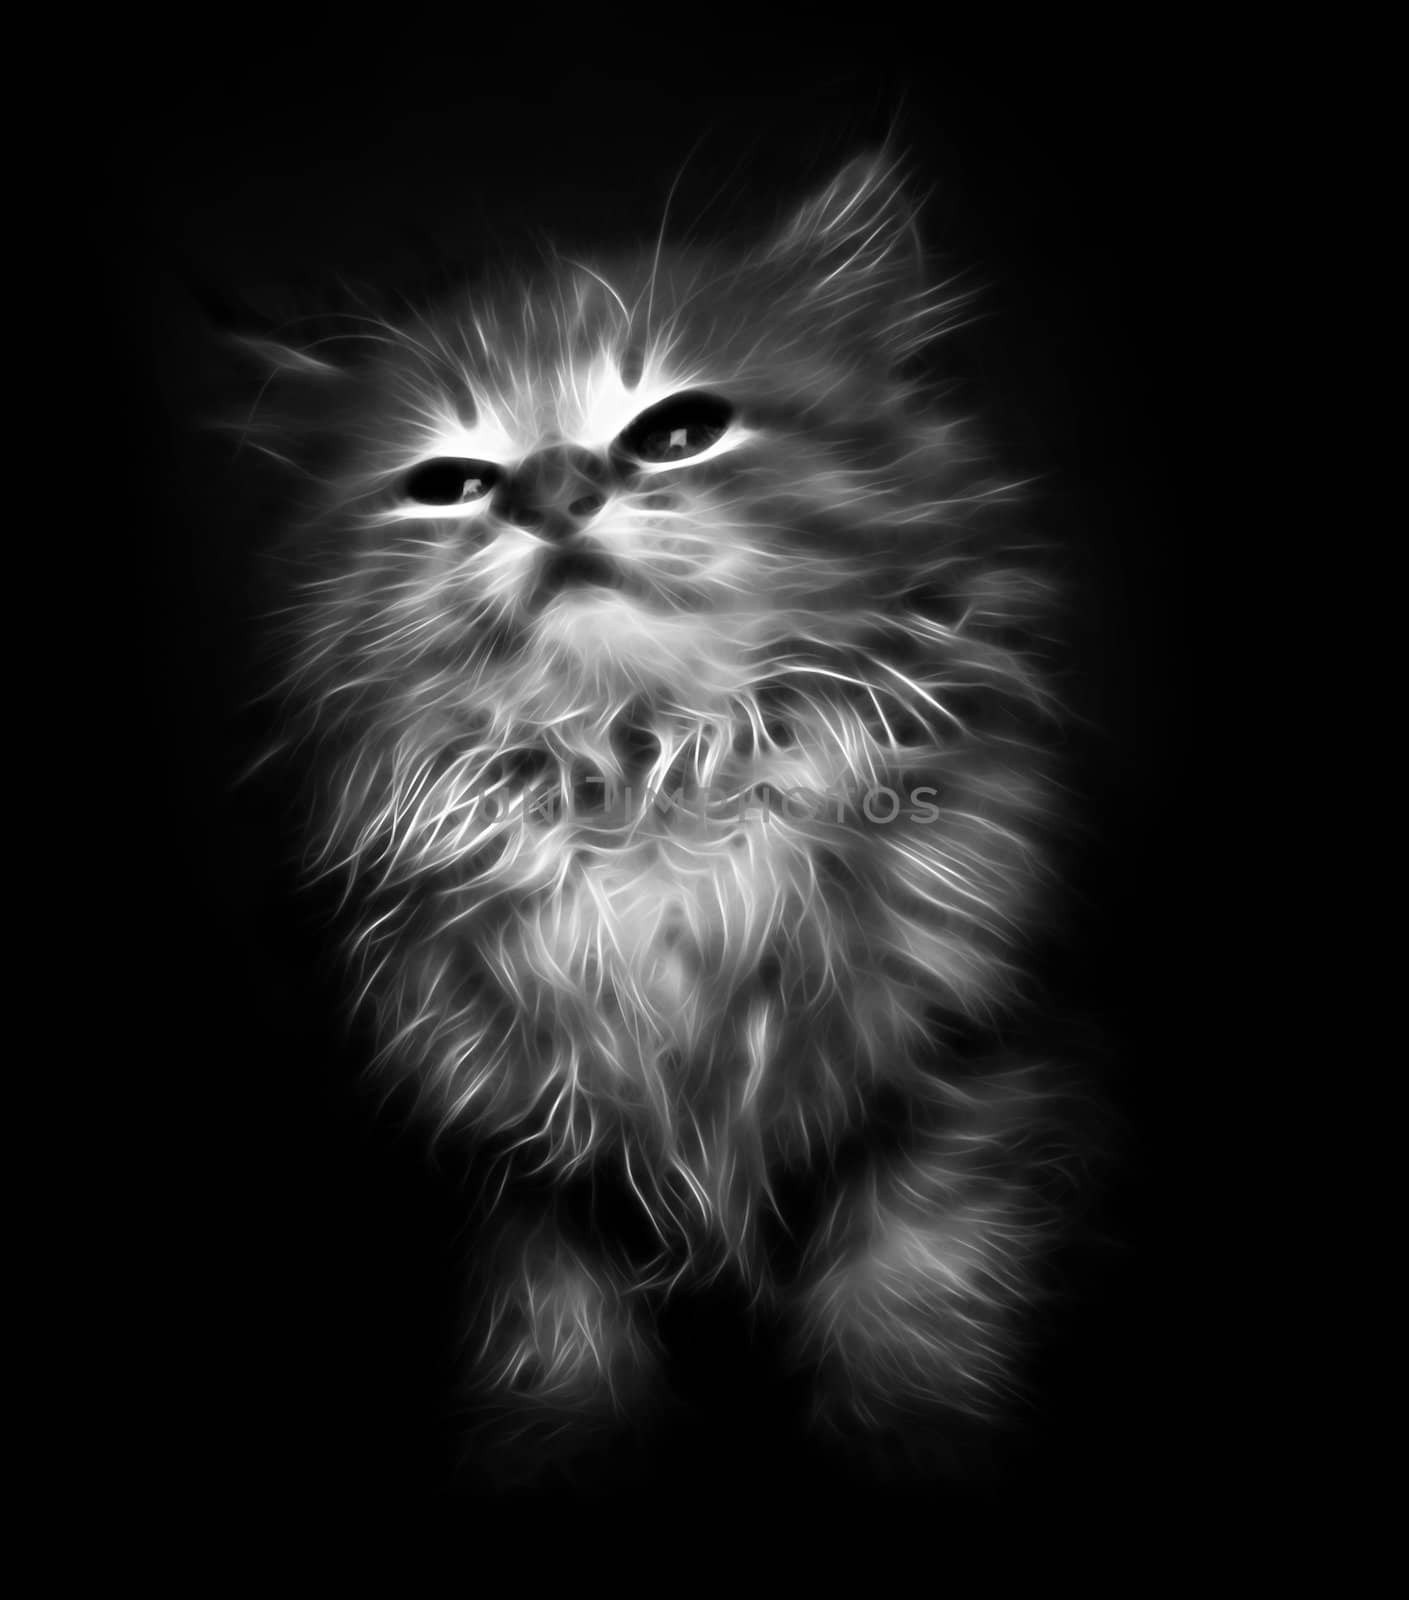 Abstract kitten on black background